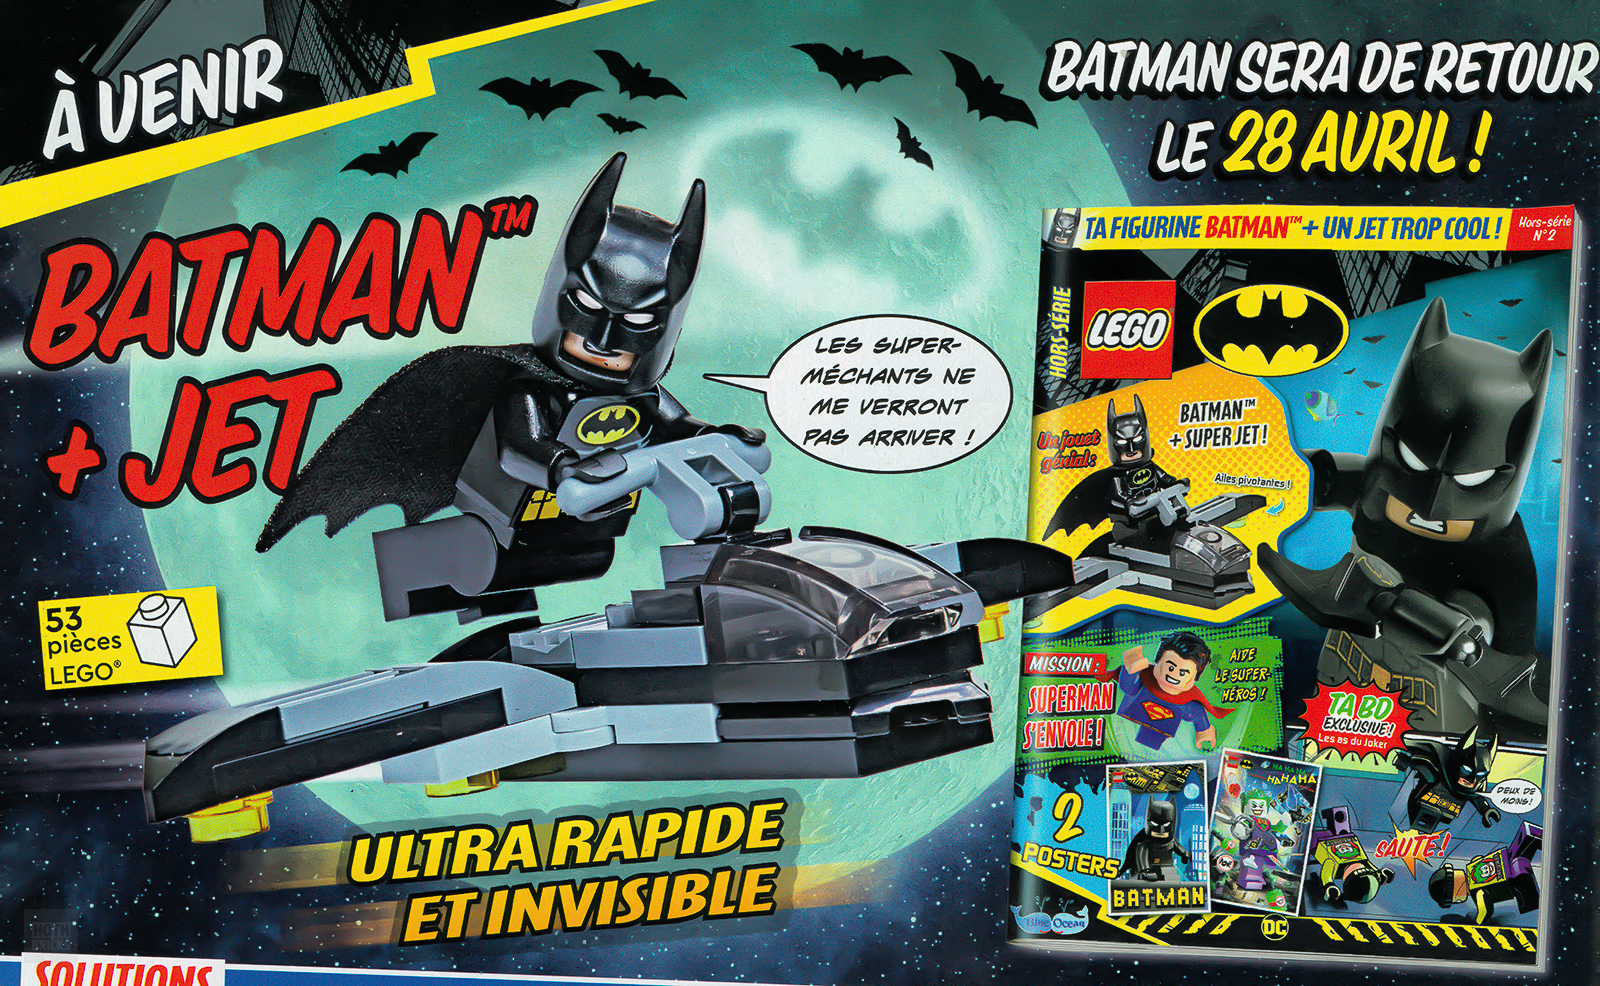 Di kios koran: Edisi Maret 2023 dari majalah LEGO Batman resmi